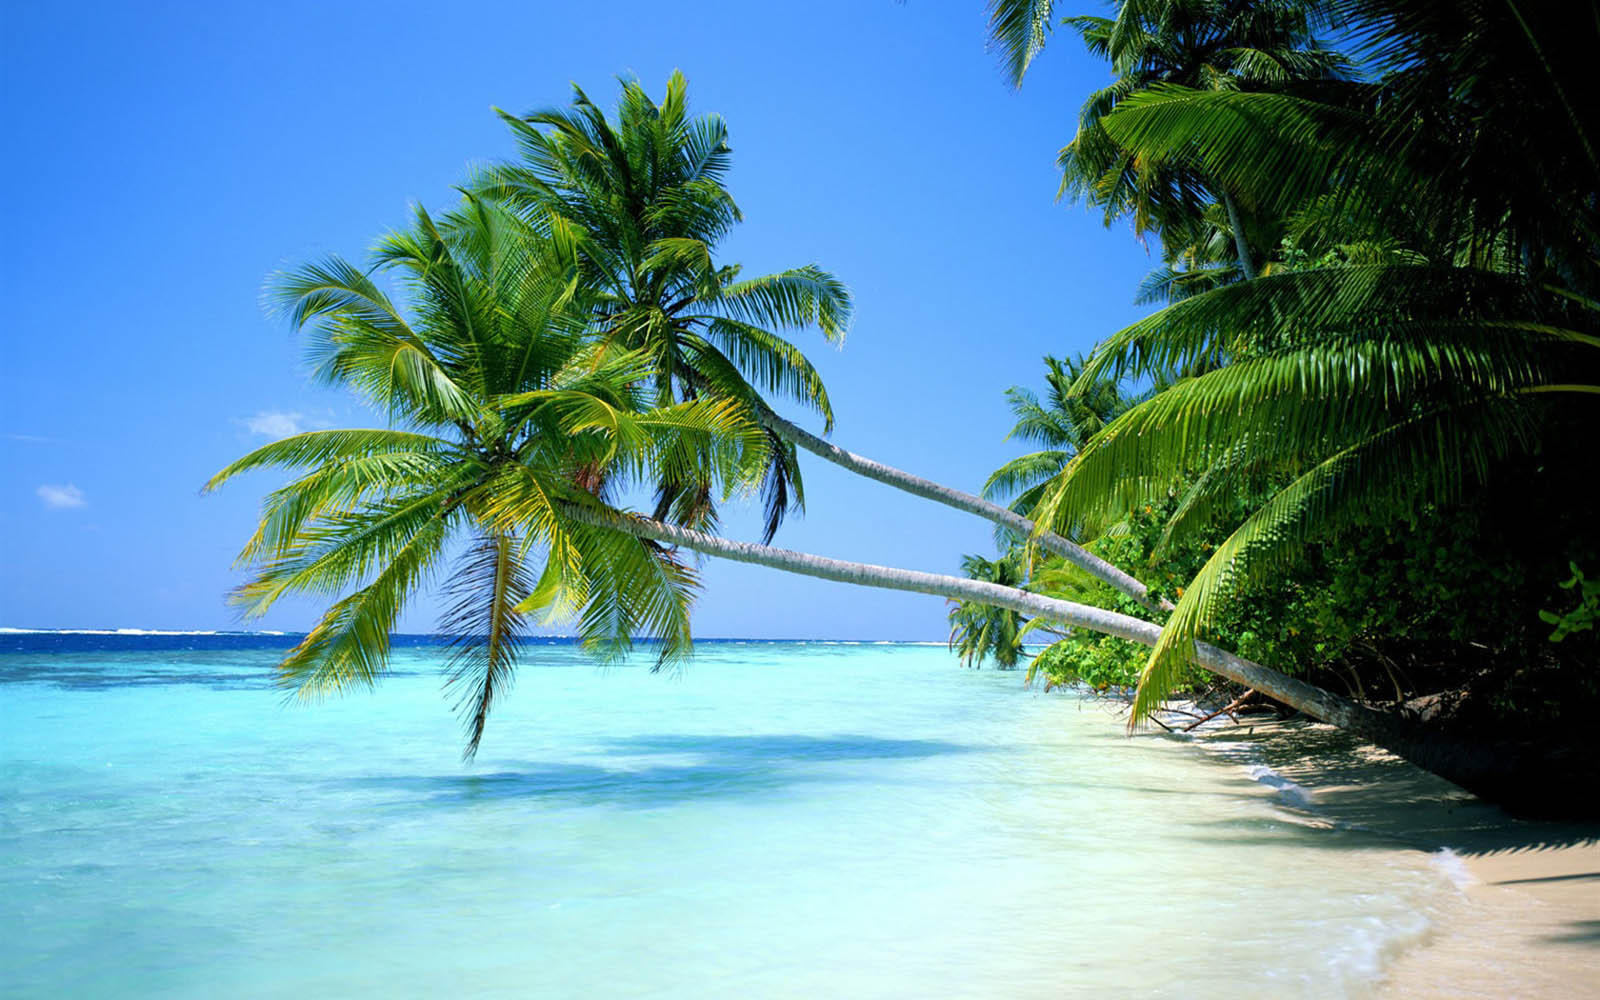 albero di cocco wallpaper hd,natura,albero,paesaggio naturale,caraibico,palma